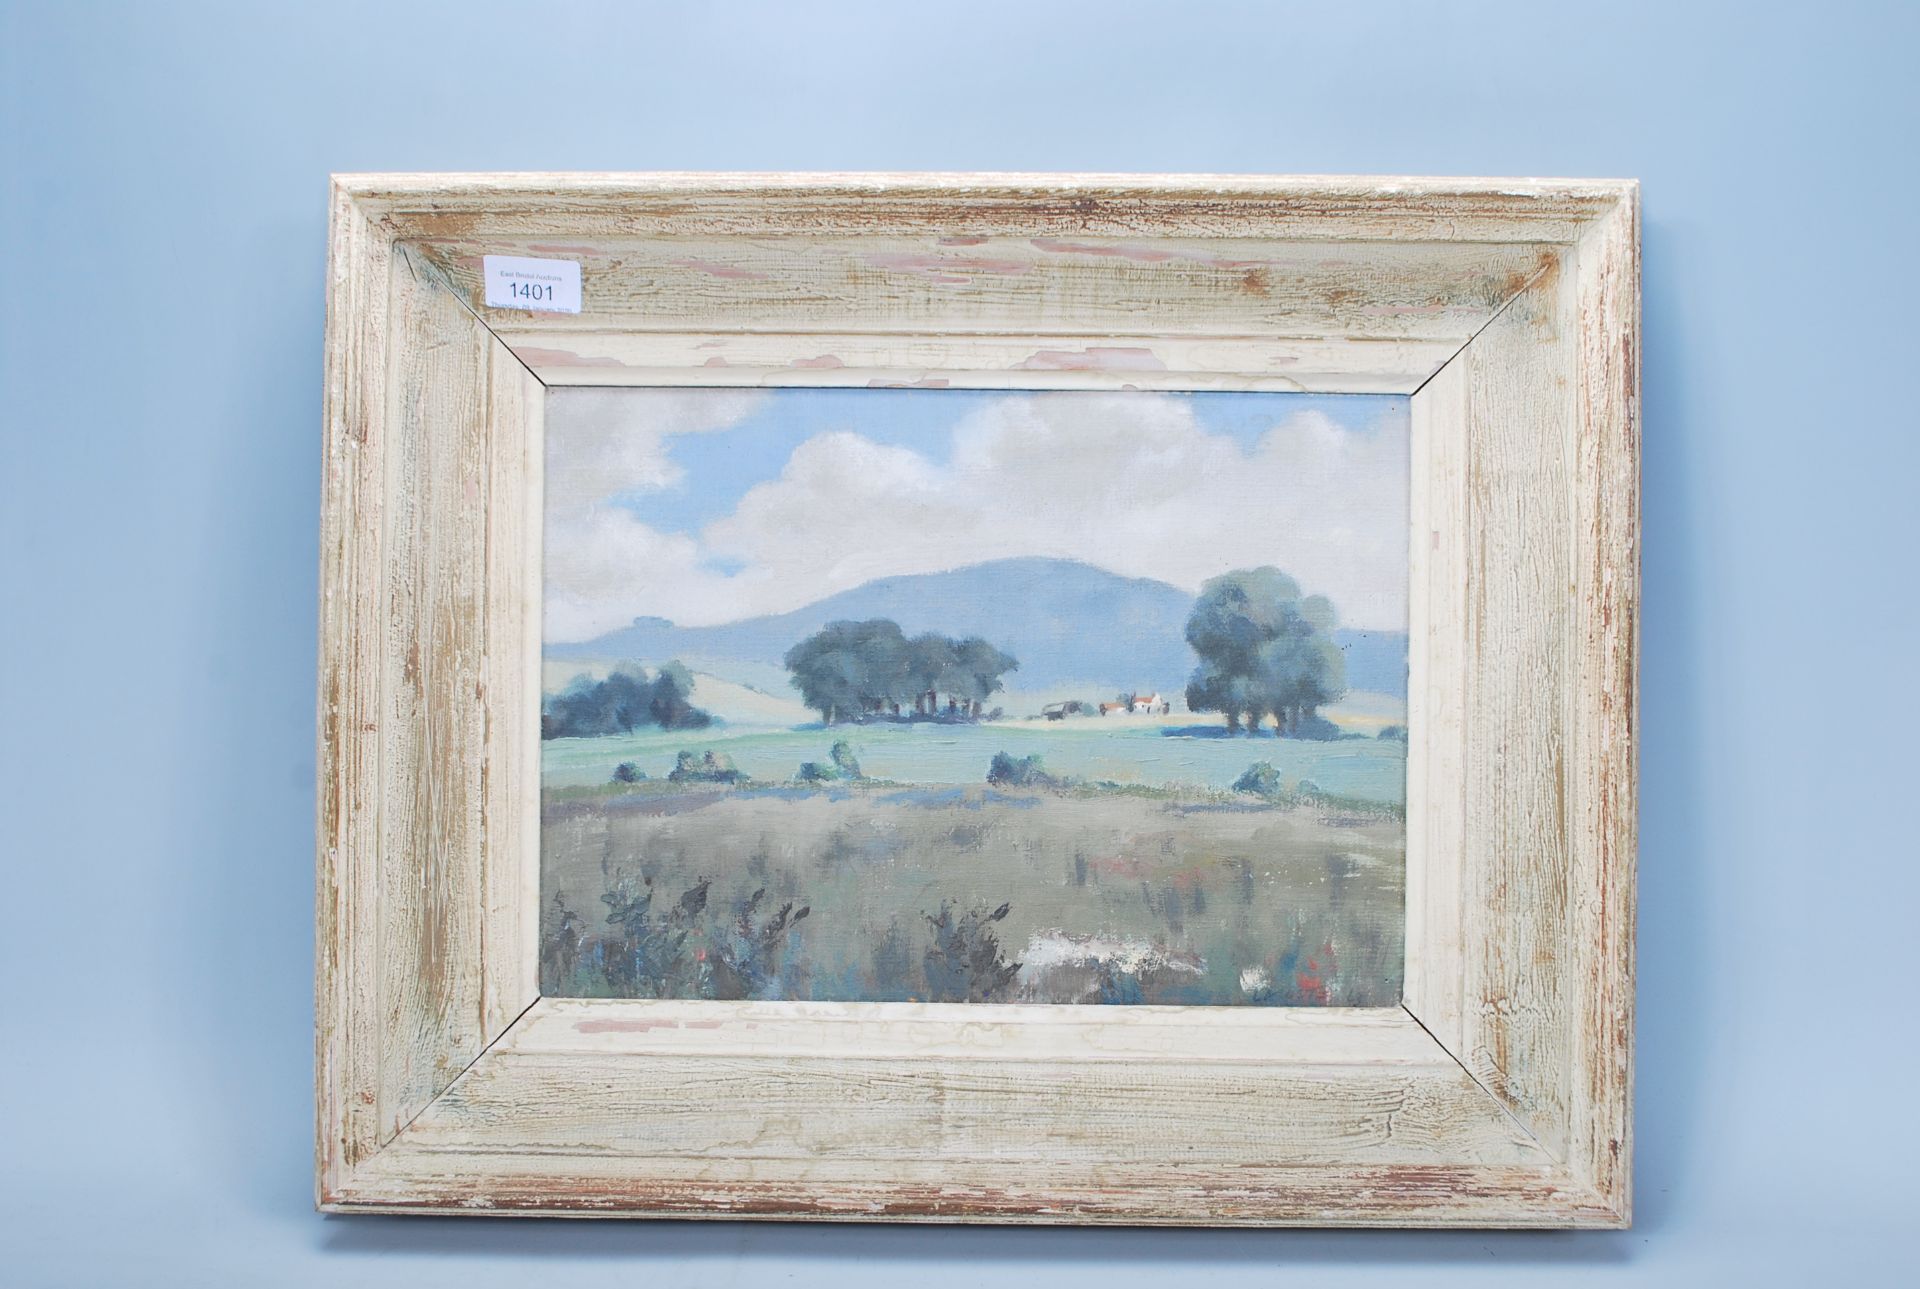 Gerald Lacoste - 'Litlington' - A mid 20th Century oil on canvas painting depicting a landscape - Bild 2 aus 8